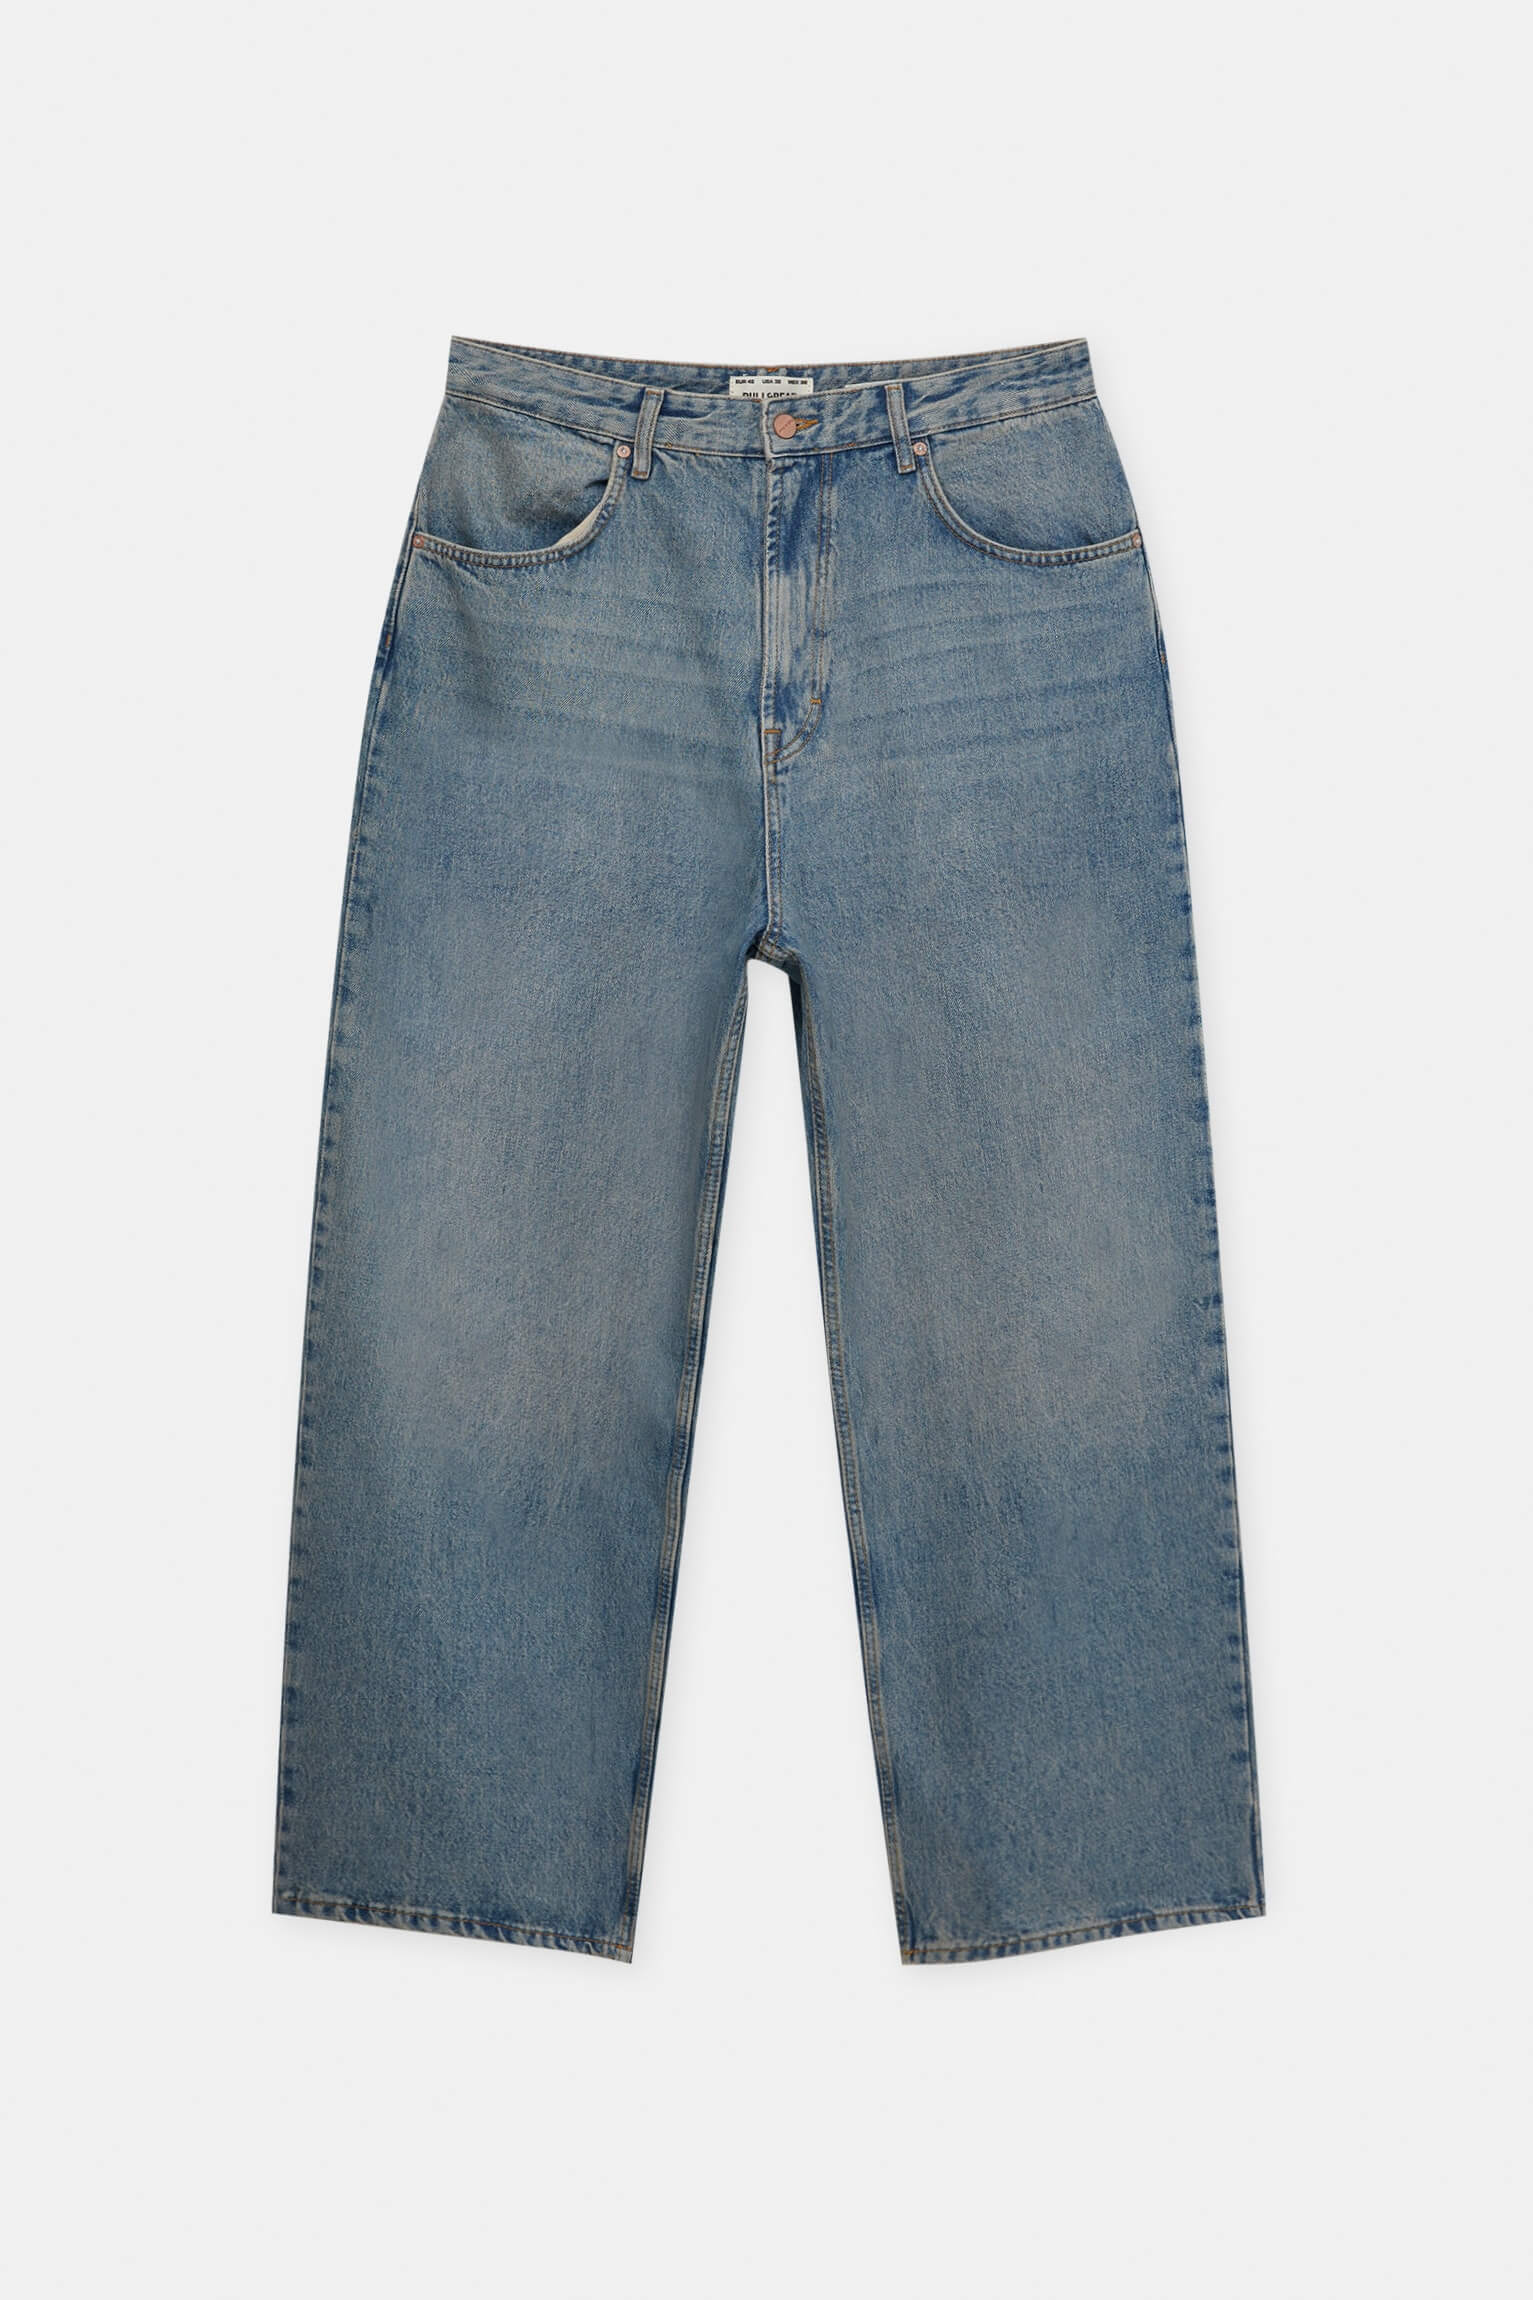 Джинсы Pull & Bear Wide Leg Baggy, средне-синий 2022 джинсы для мужчин и женщин мужские винтажные джинсы с вышивкой джинсы мешковатые джинсы с карманами джинсы с пуговицами джинсовые брю